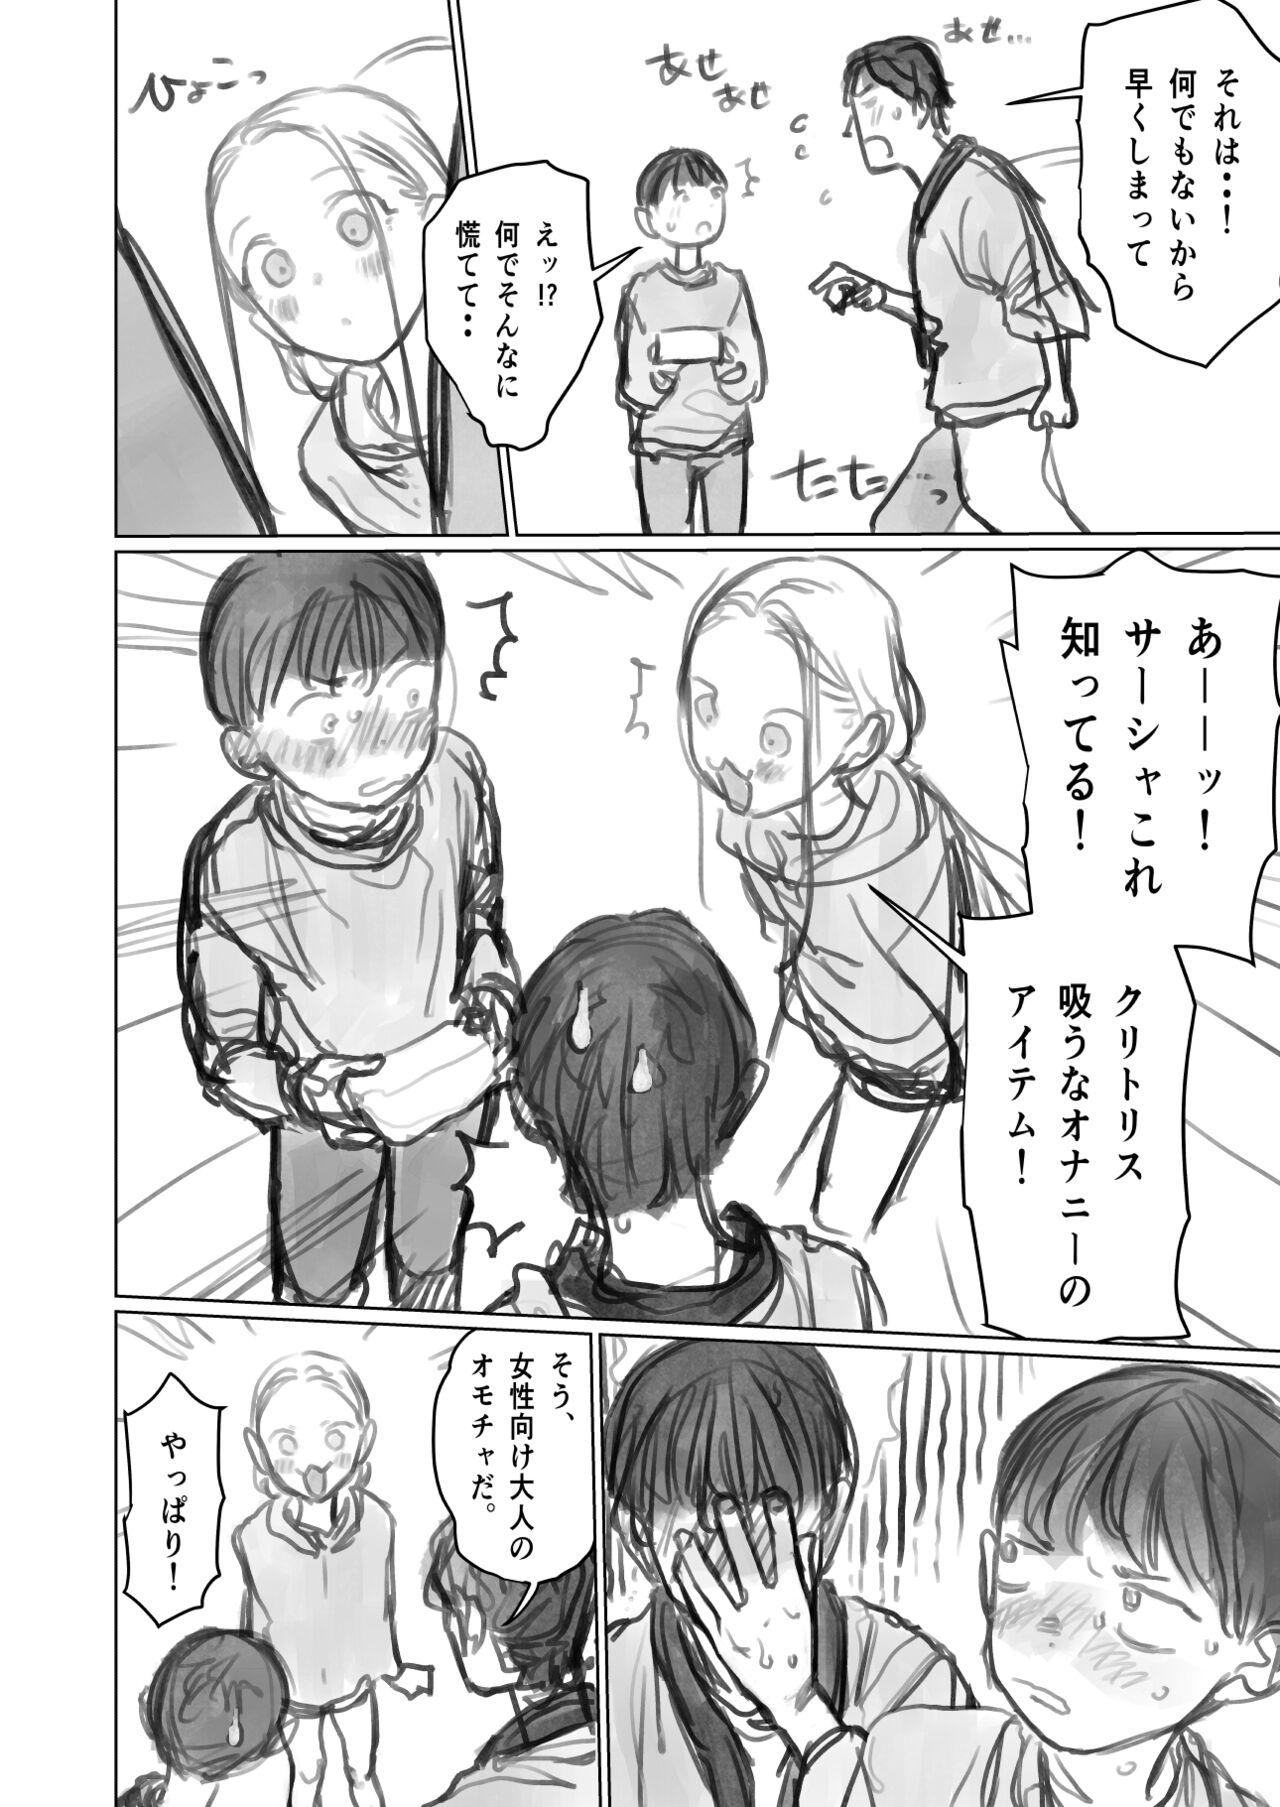 Bunduda Cli Kyuuin Omocha to Sasha-chan. - Original Self - Page 2